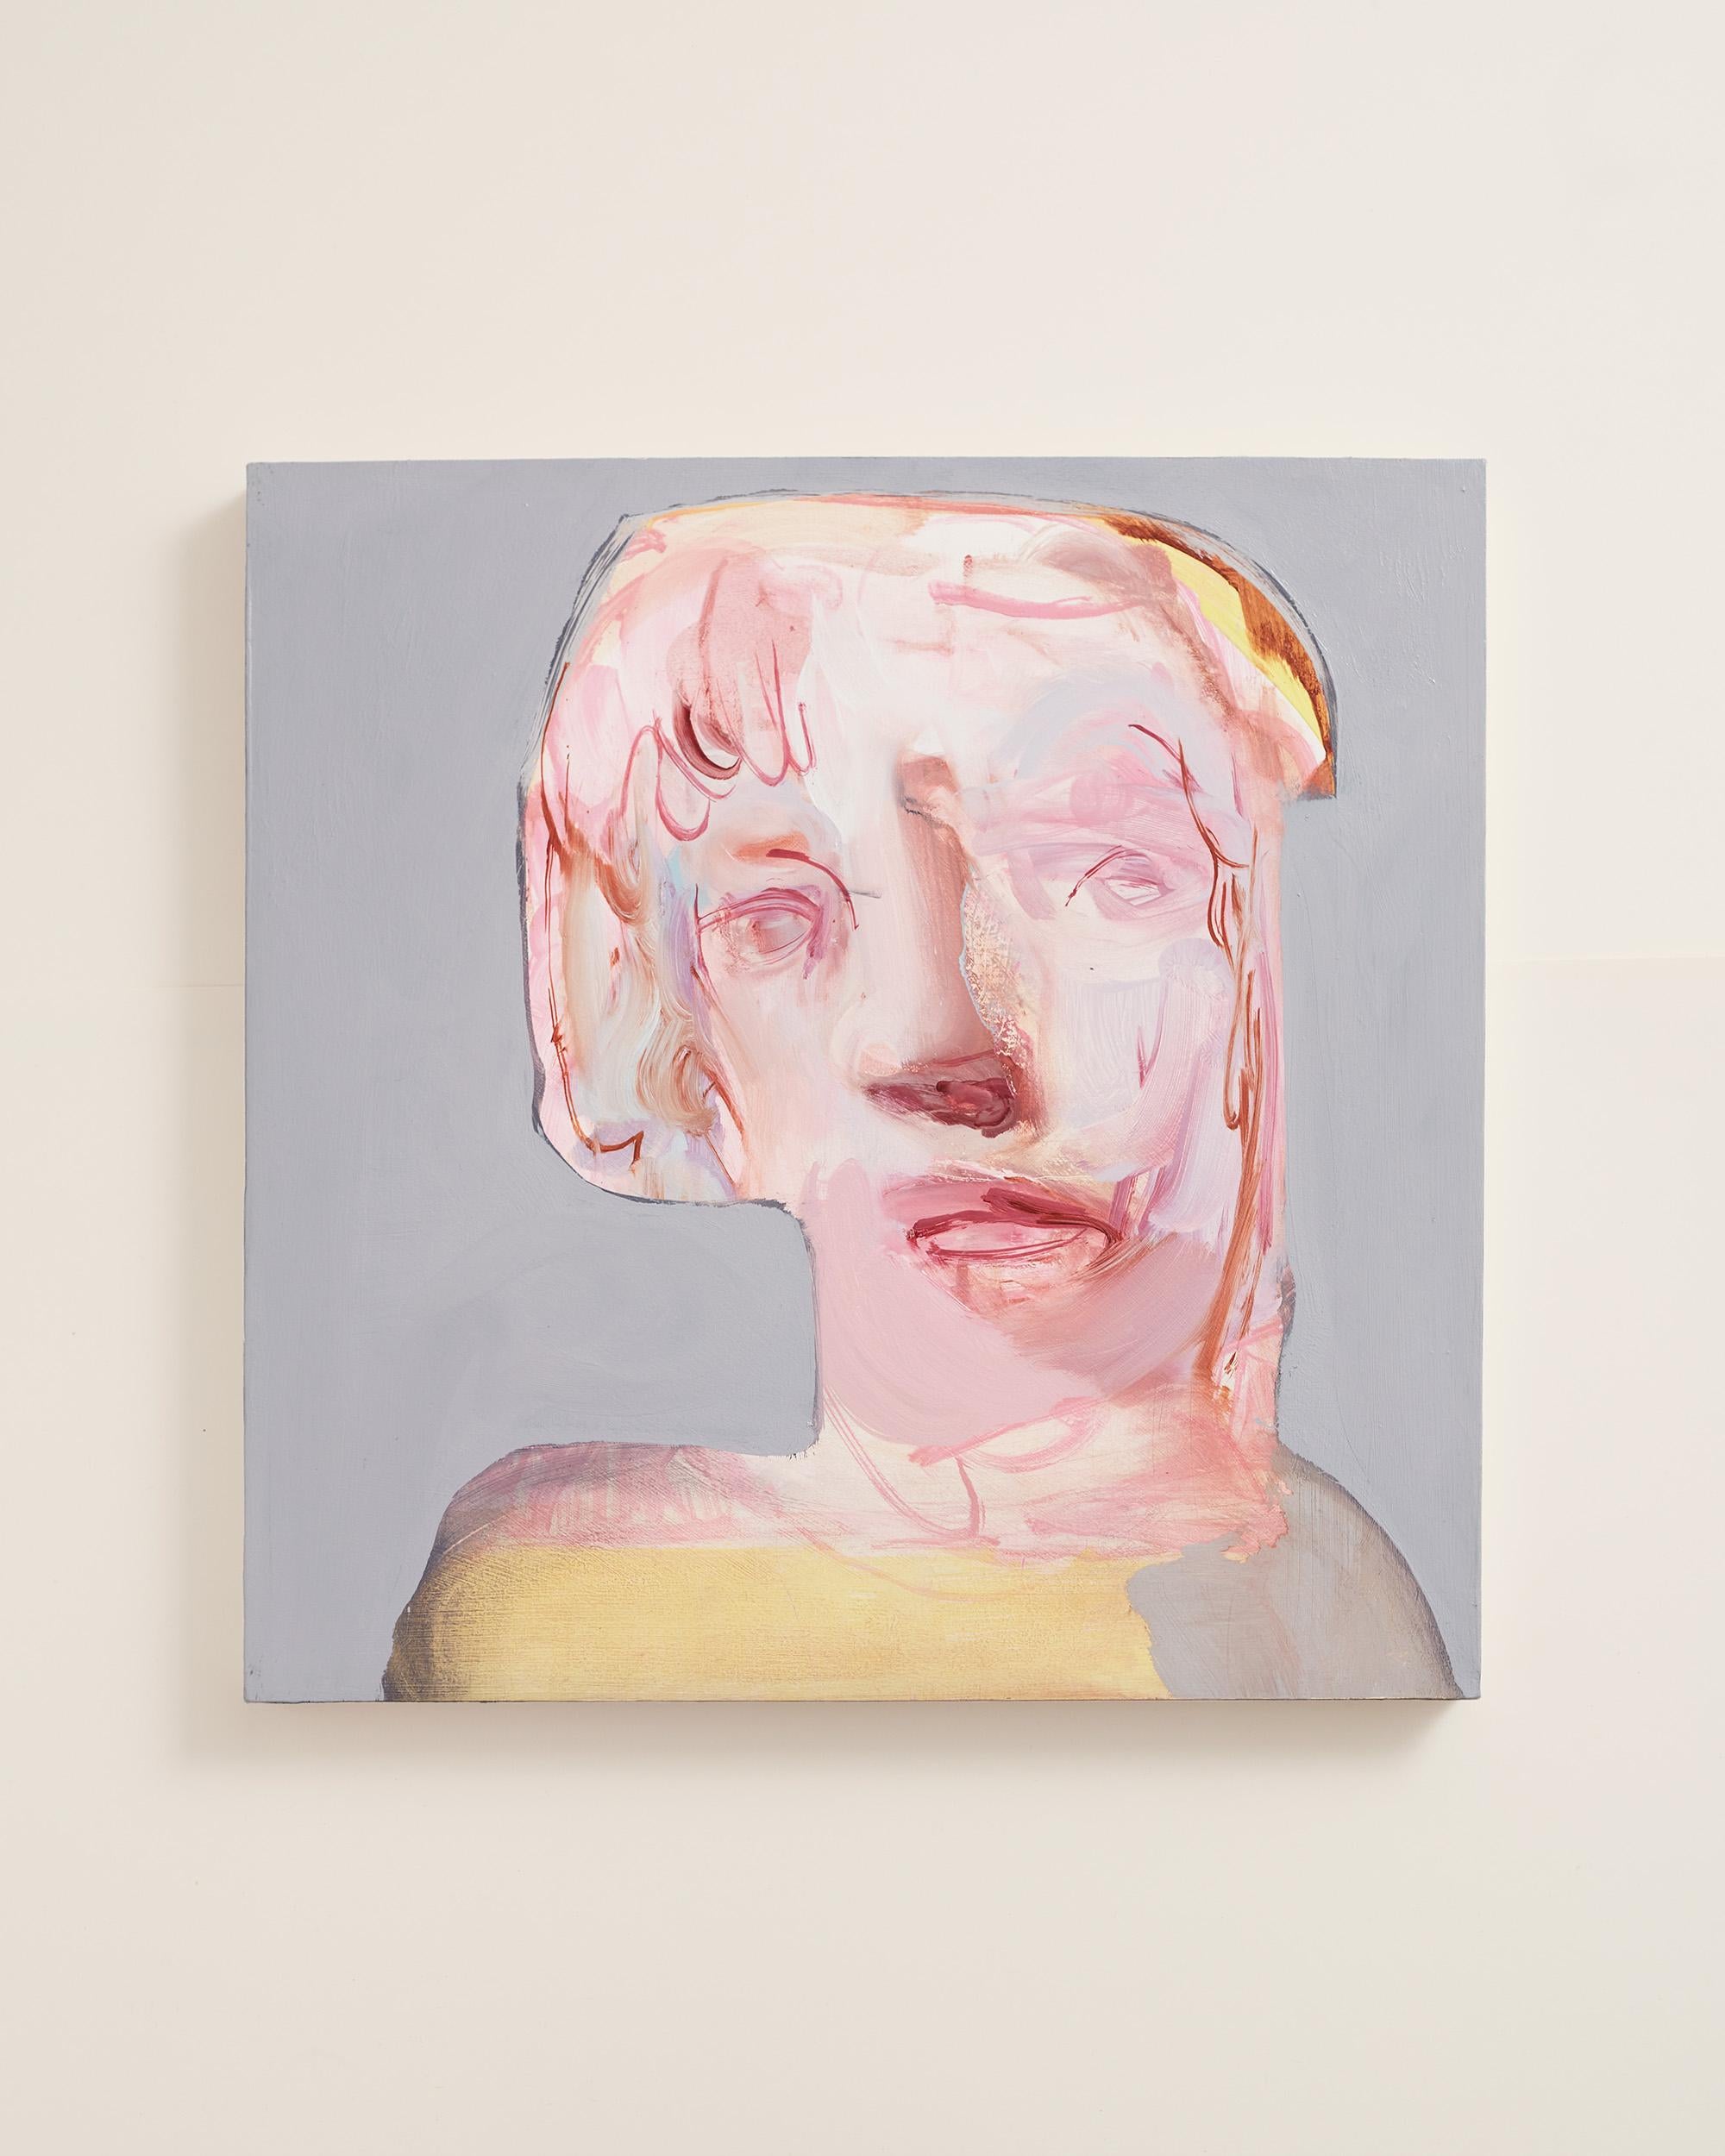 Jeune femme blonde - Contemporary oil on canvas portrait painting, 2020